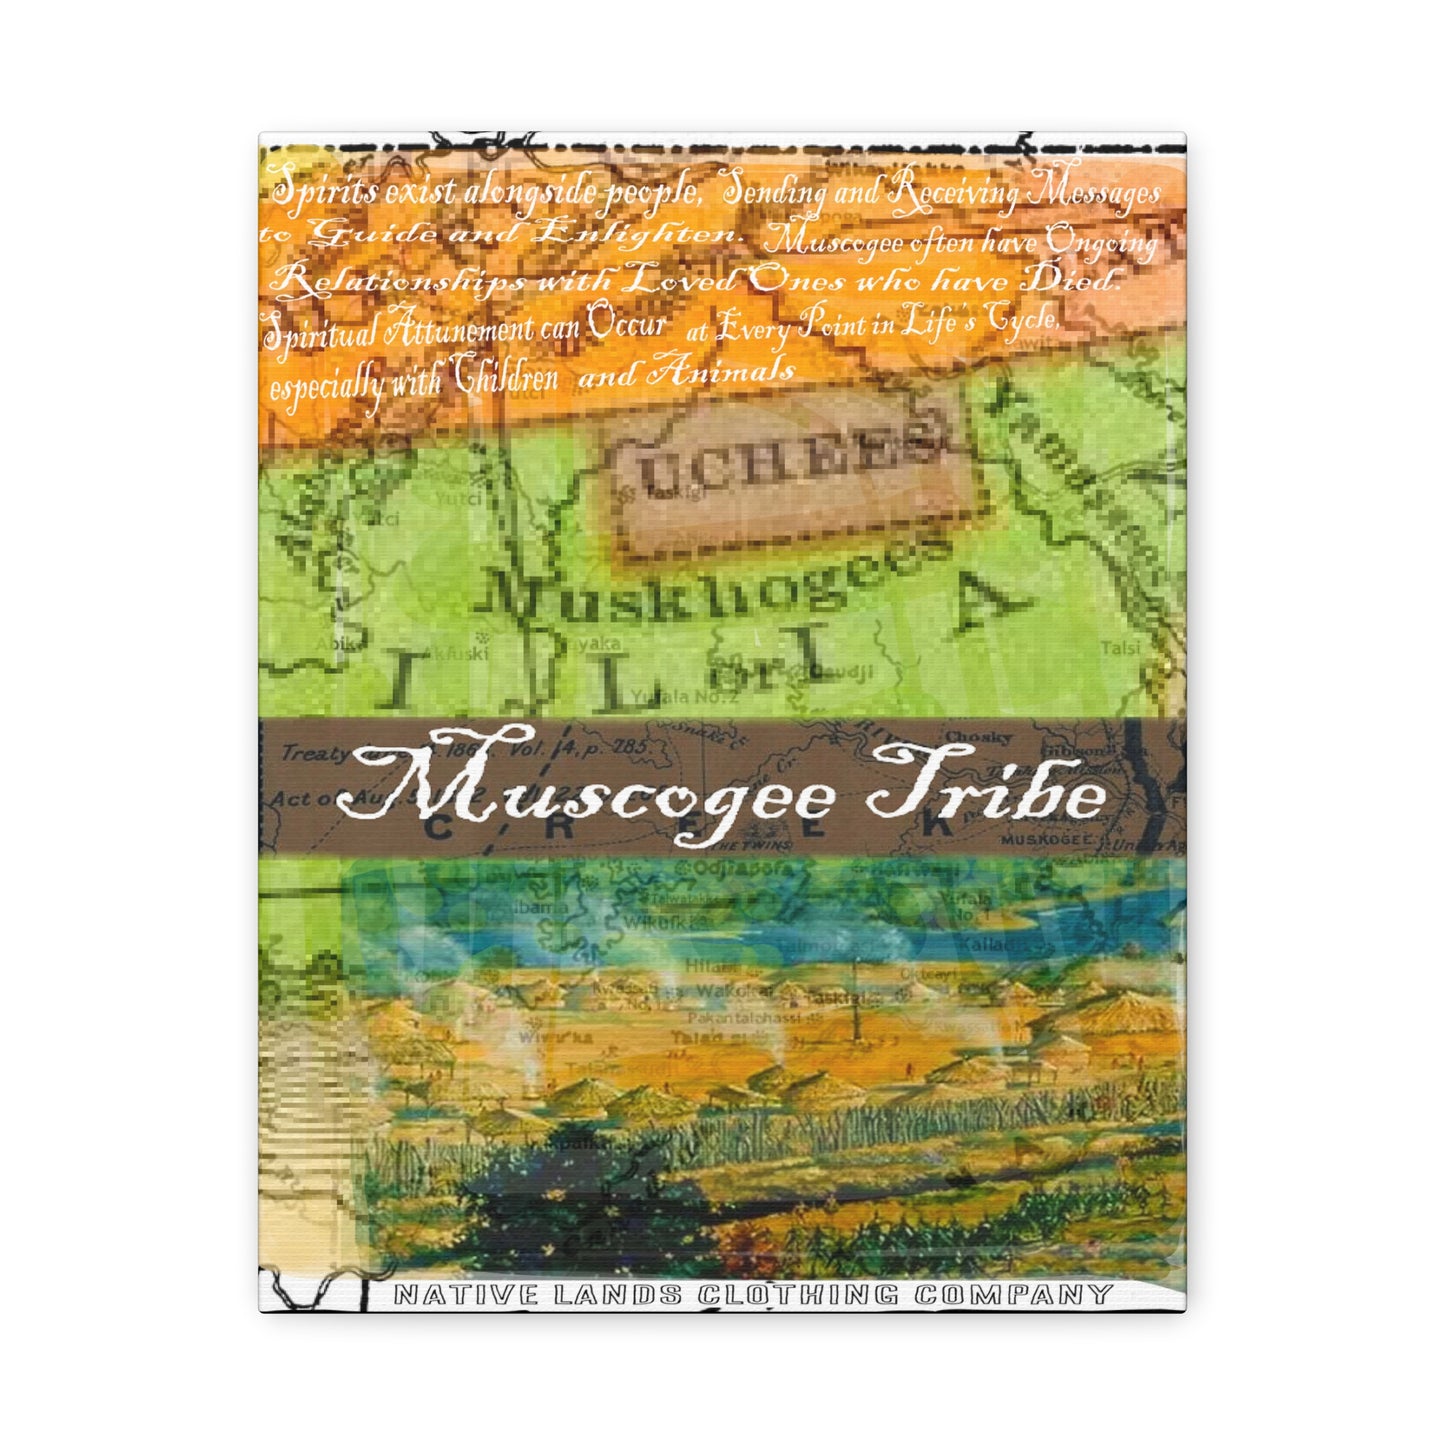 Muscogee 部落帆布画廊包裹 11 英寸 x 14 英寸美洲原住民